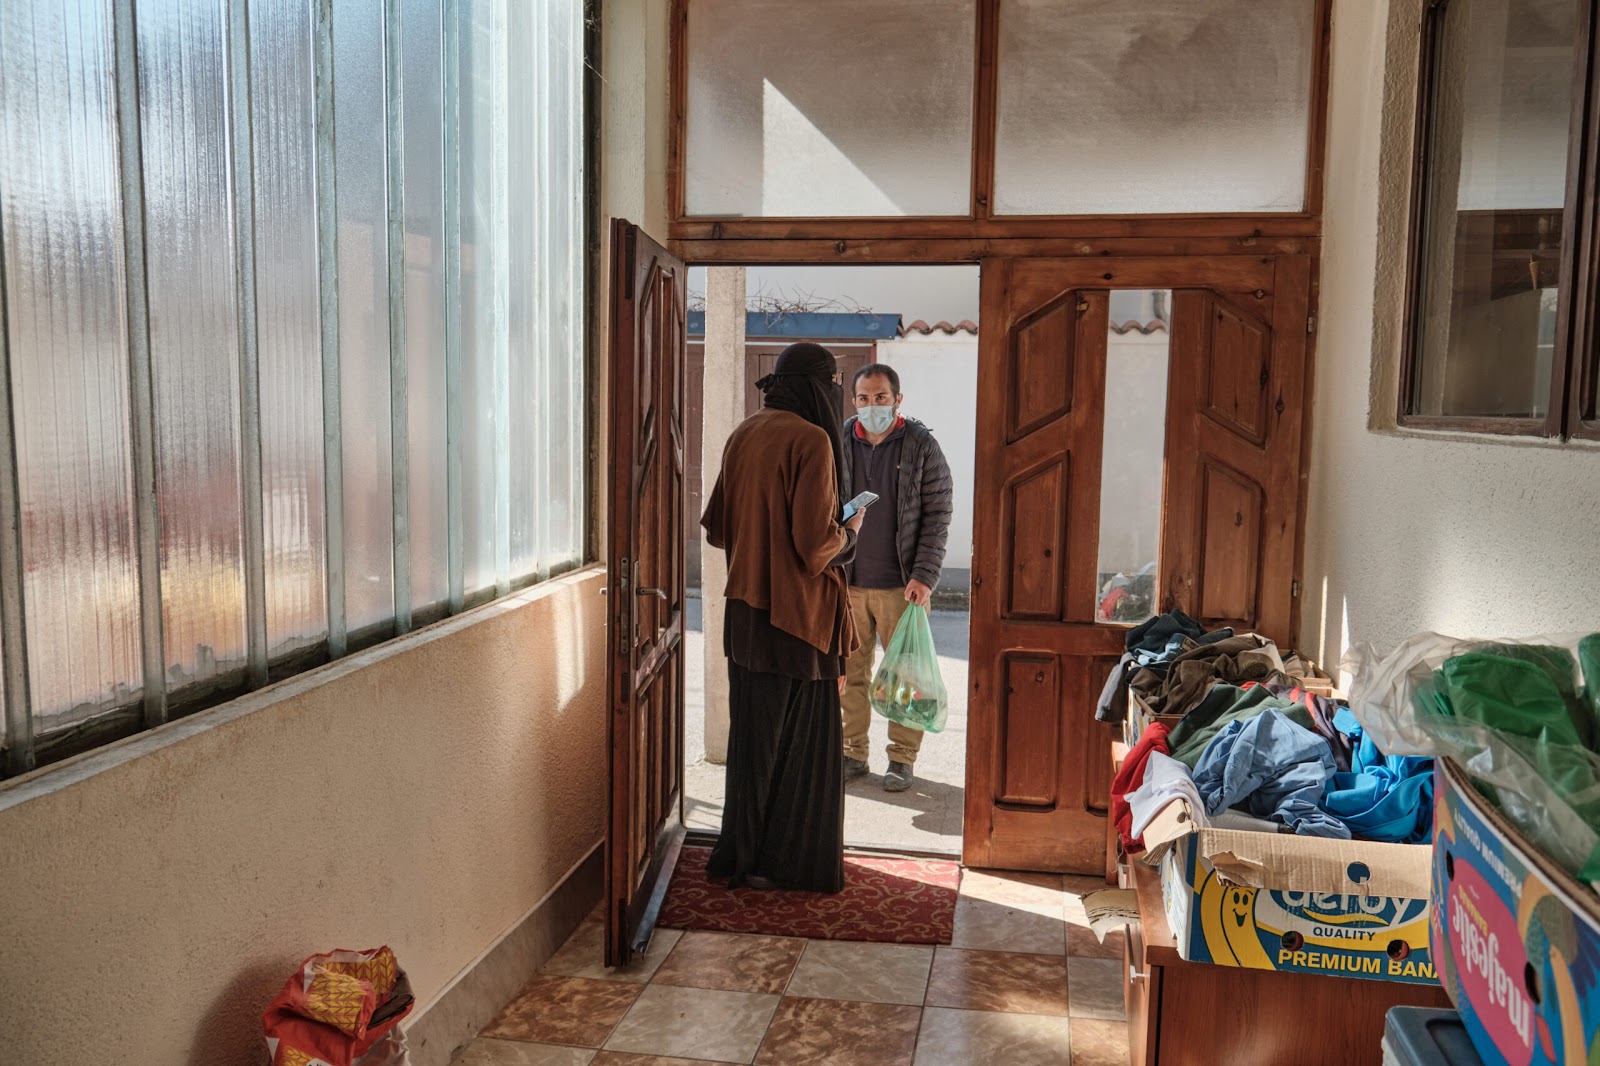 Azra im Gespräch mit einem Mann, der auf der Suche nach Lebensmitteln und Kleidung für sich und seine Familie zu ihr kam. | Foto: Chiara Fabbro